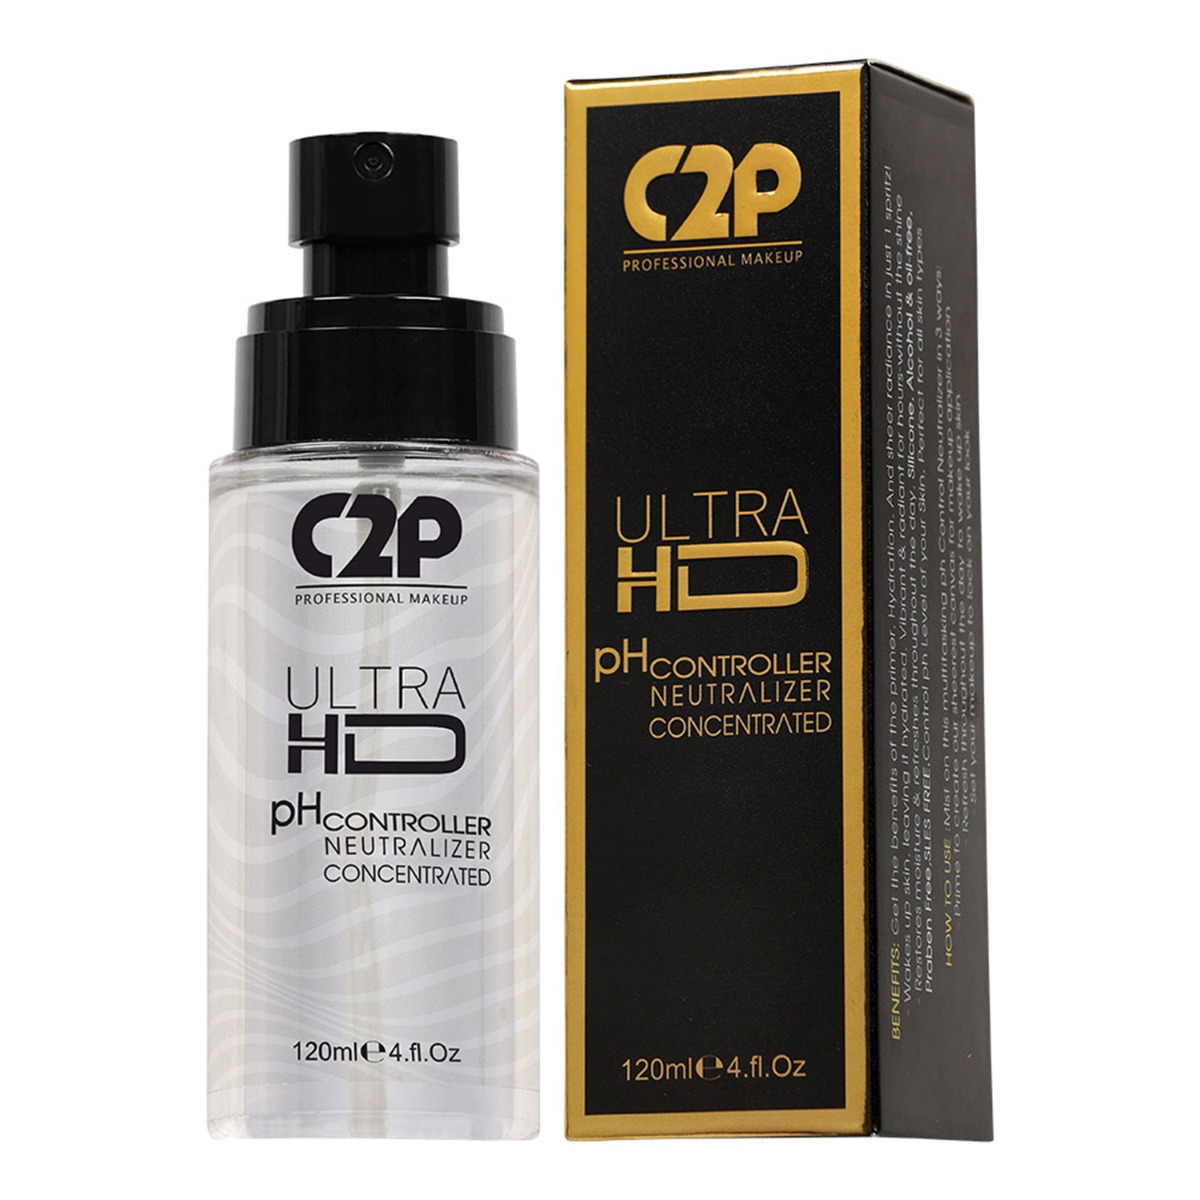 C2P Pro Ultra HD Ph Controller Neutralizer, 120ml